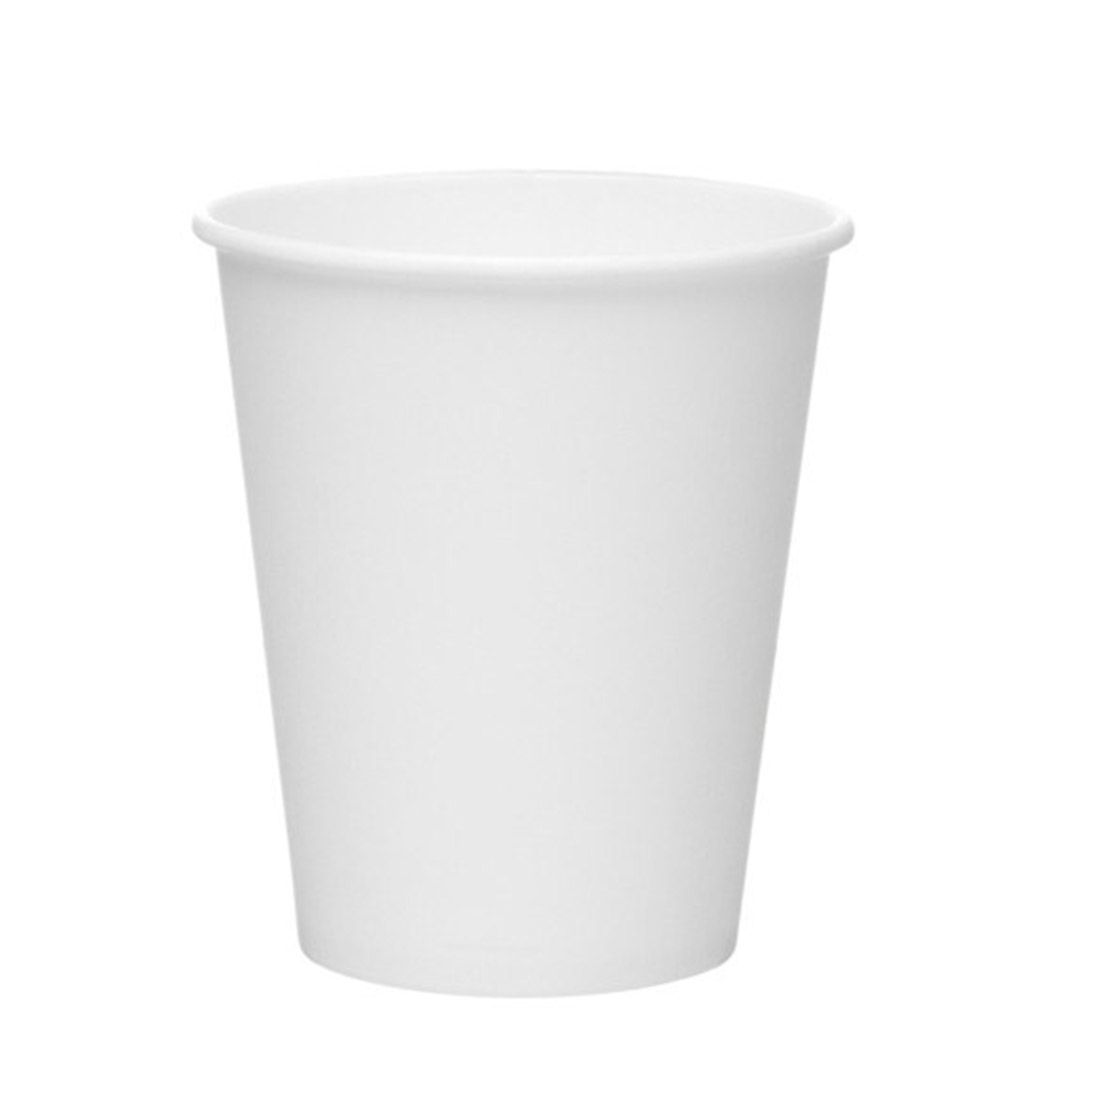 Fajillas – Mangas - para vaso de café, medida estándar para vaso de 10, 12y  14 Oz Bebidas frías/ calientes. Caple blanco o café. 2000 piezas.